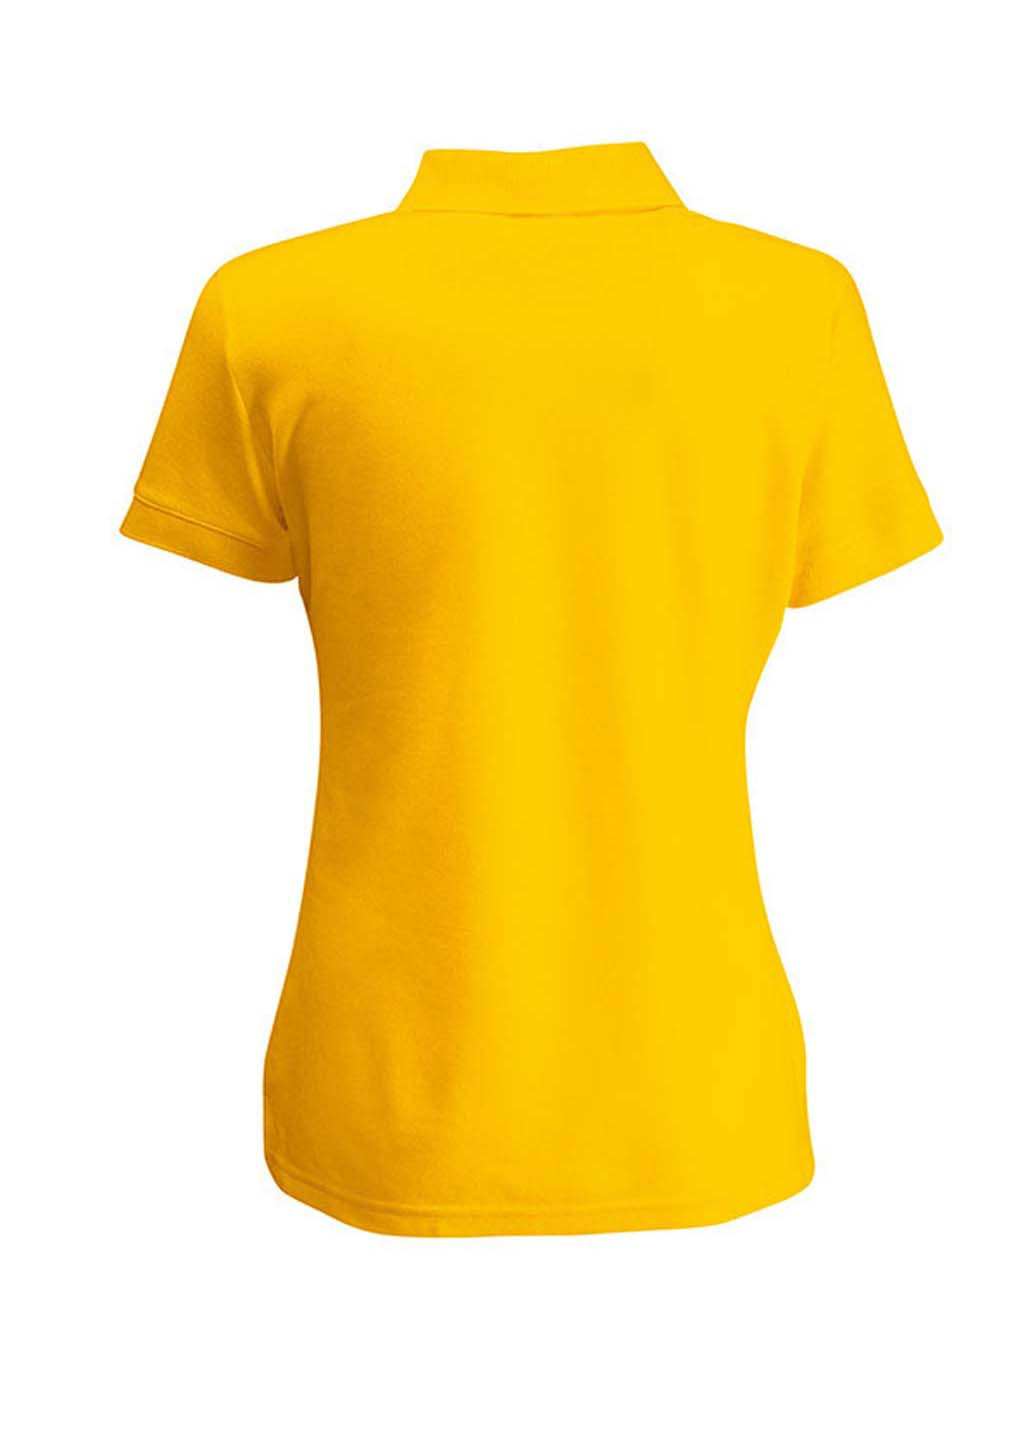 Желтая женская футболка-поло Fruit of the Loom